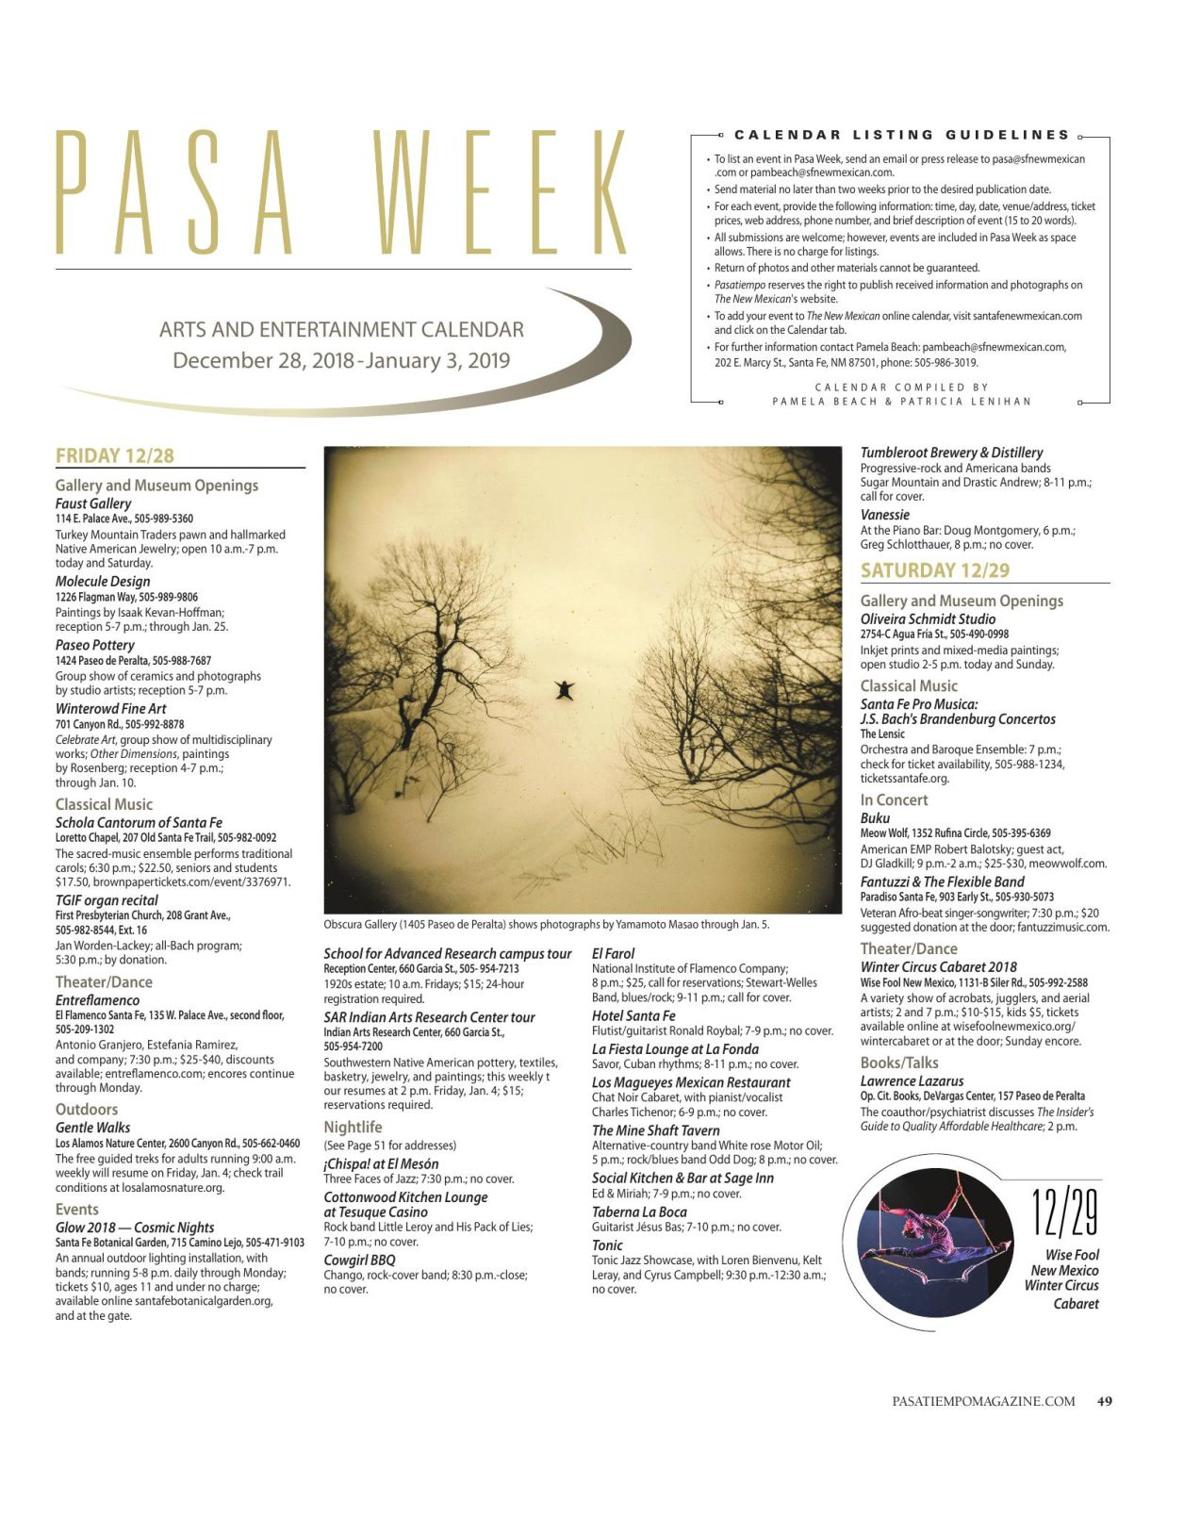 Read the Pasatiempo calendar Pasa Calendar